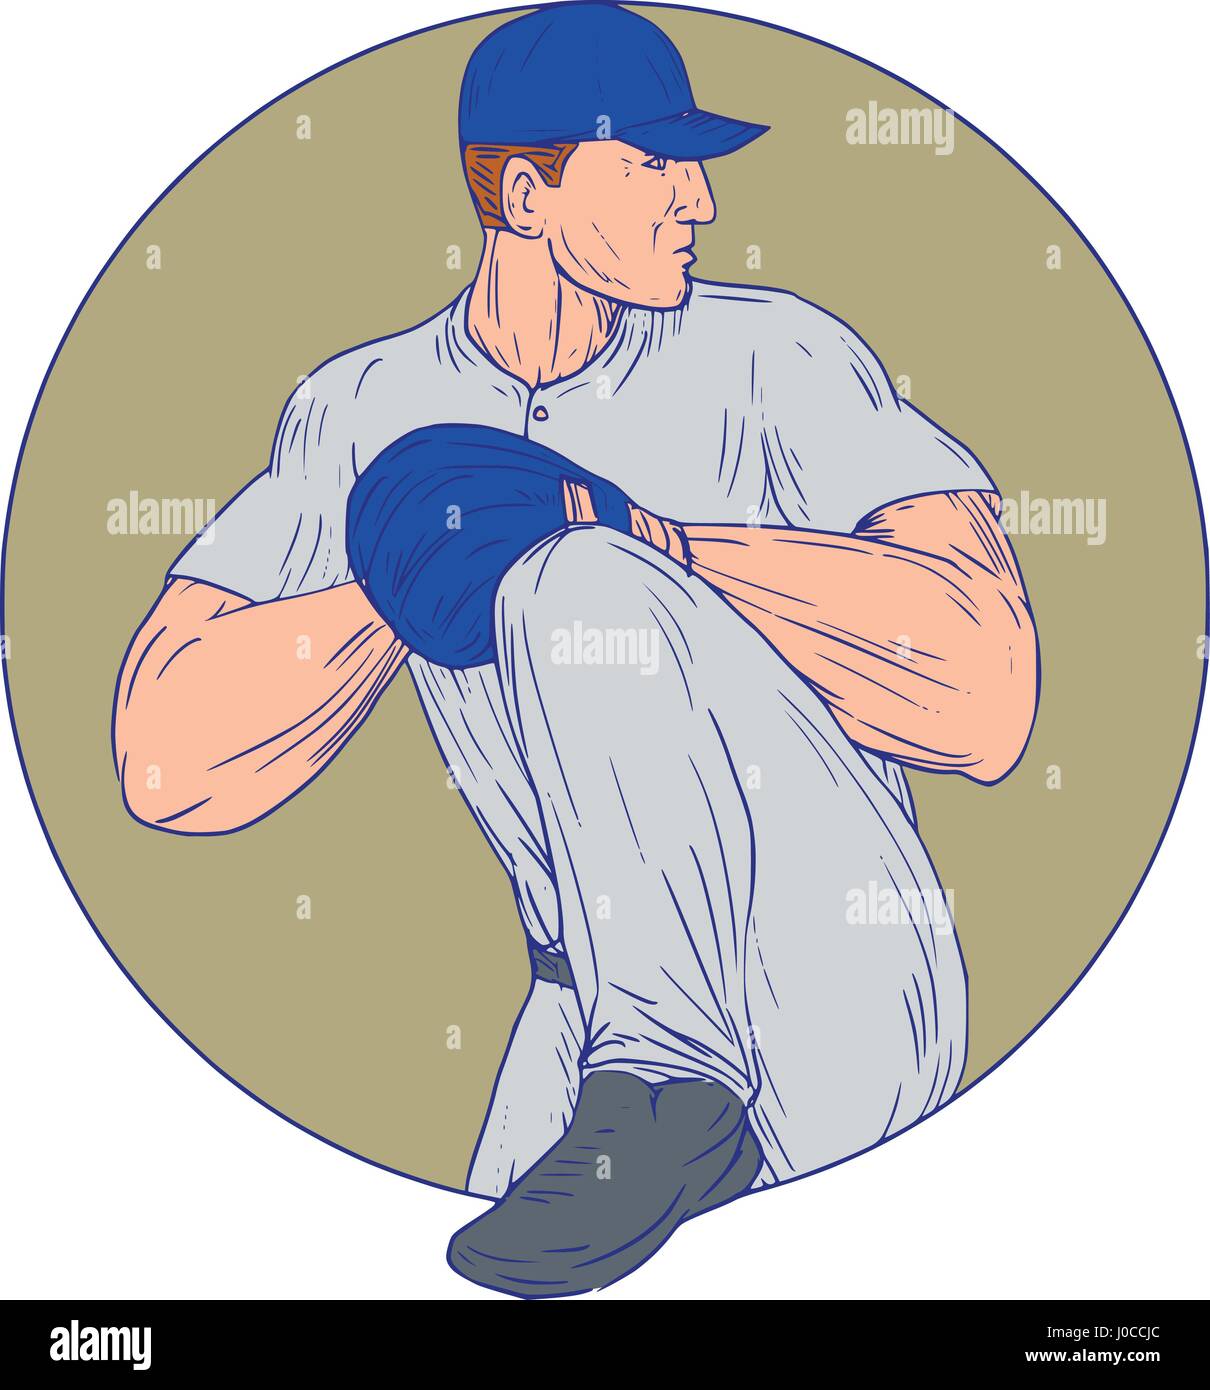 Disegno stile sketch illustrazione di un american giocatore di baseball pitcher outfilelder circa a lanciare una palla visto dal lato impostato all'interno del cerchio su i Illustrazione Vettoriale